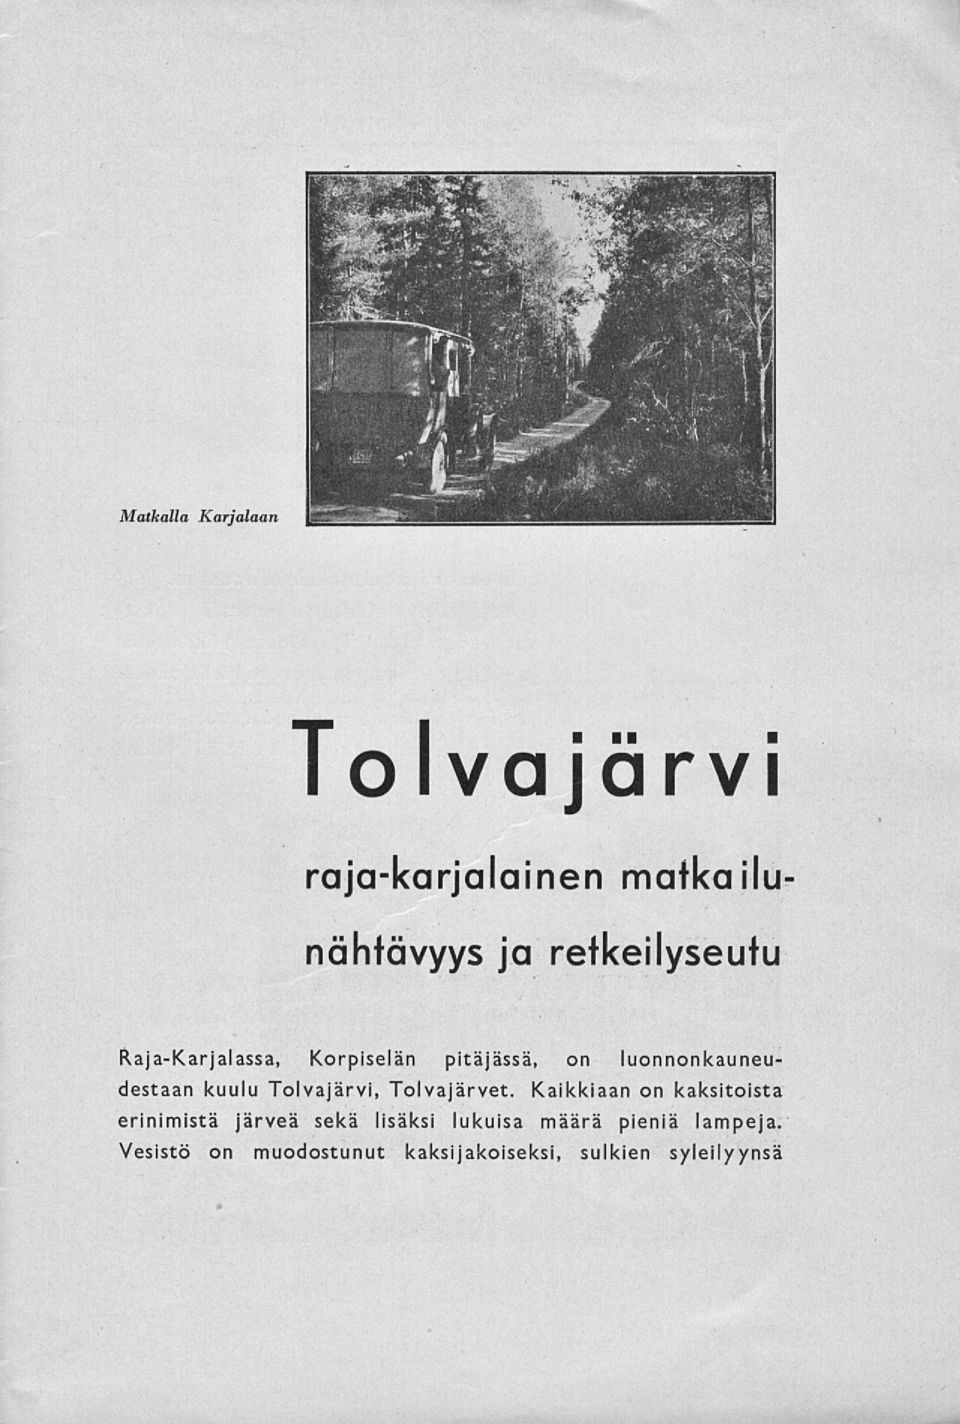 kuulu Tolvajärvi, Tolvajärvet.